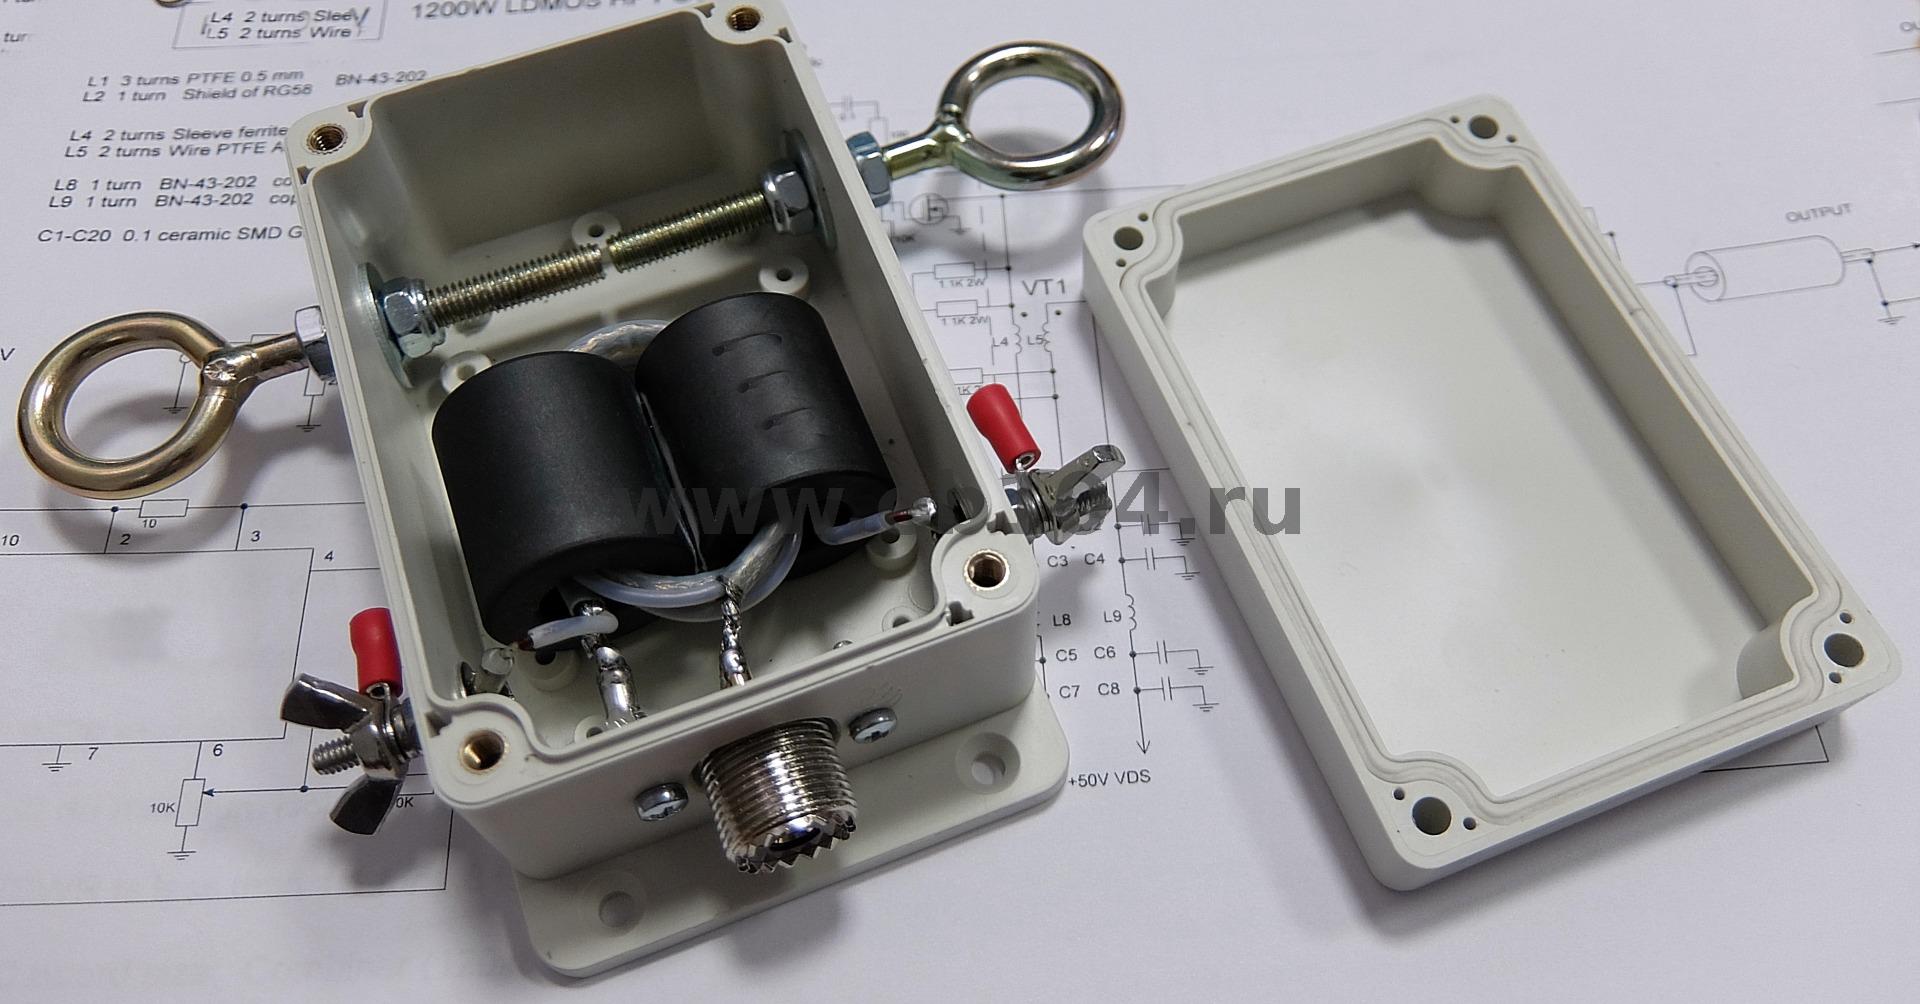 Amplificateur HF à transistors / Filtres de bande / Balun / Transformateur d'impédance : eb104.ru ZWIxMDQucnU=!DSCF0886